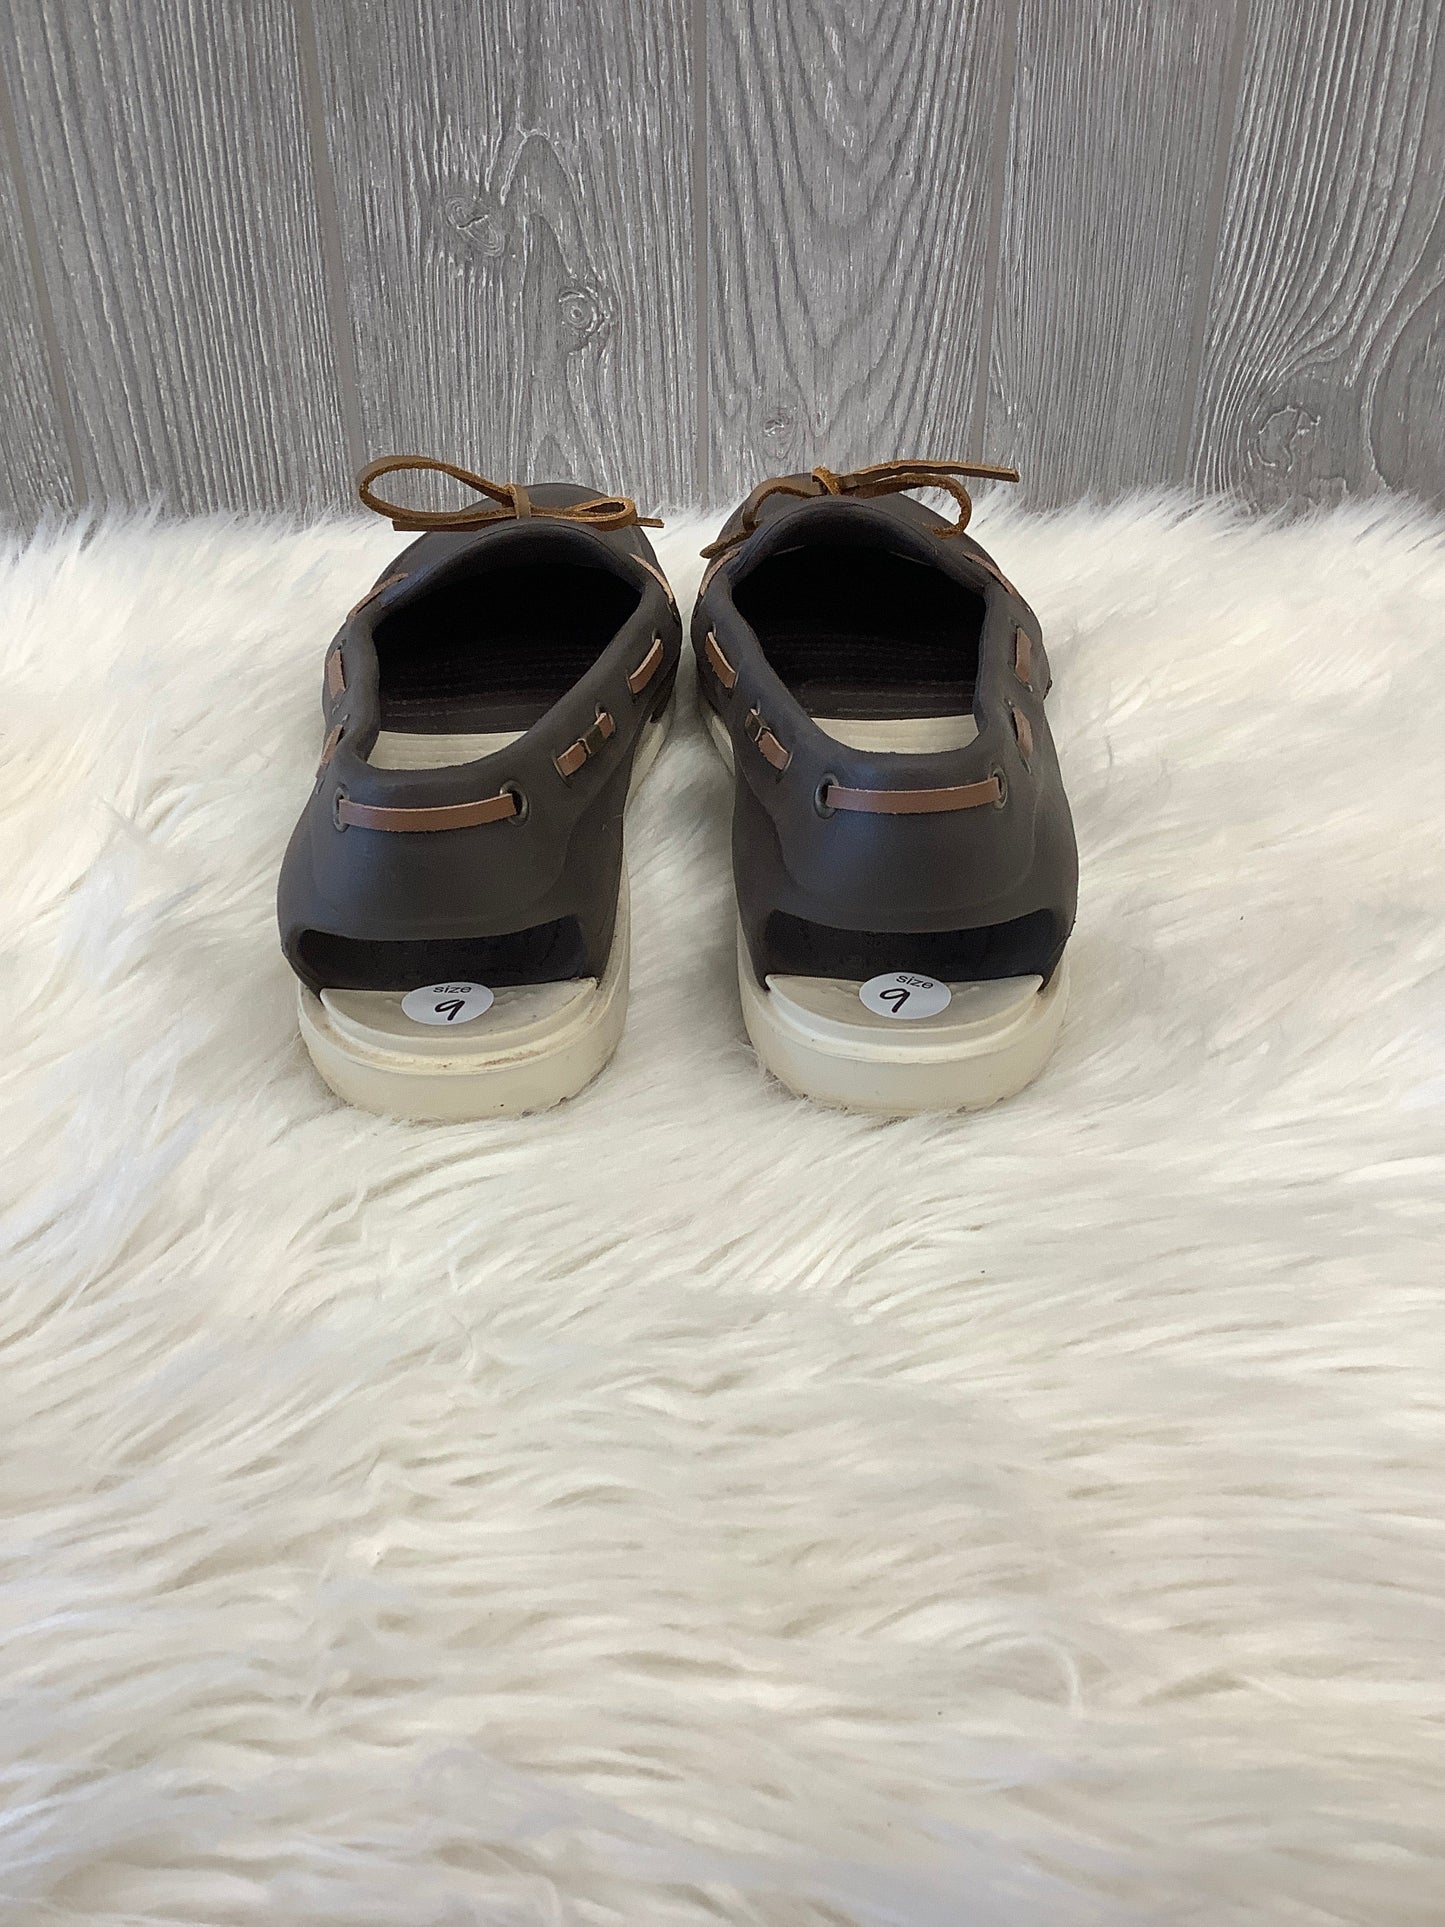 Brown Shoes Flats Crocs, Size 9